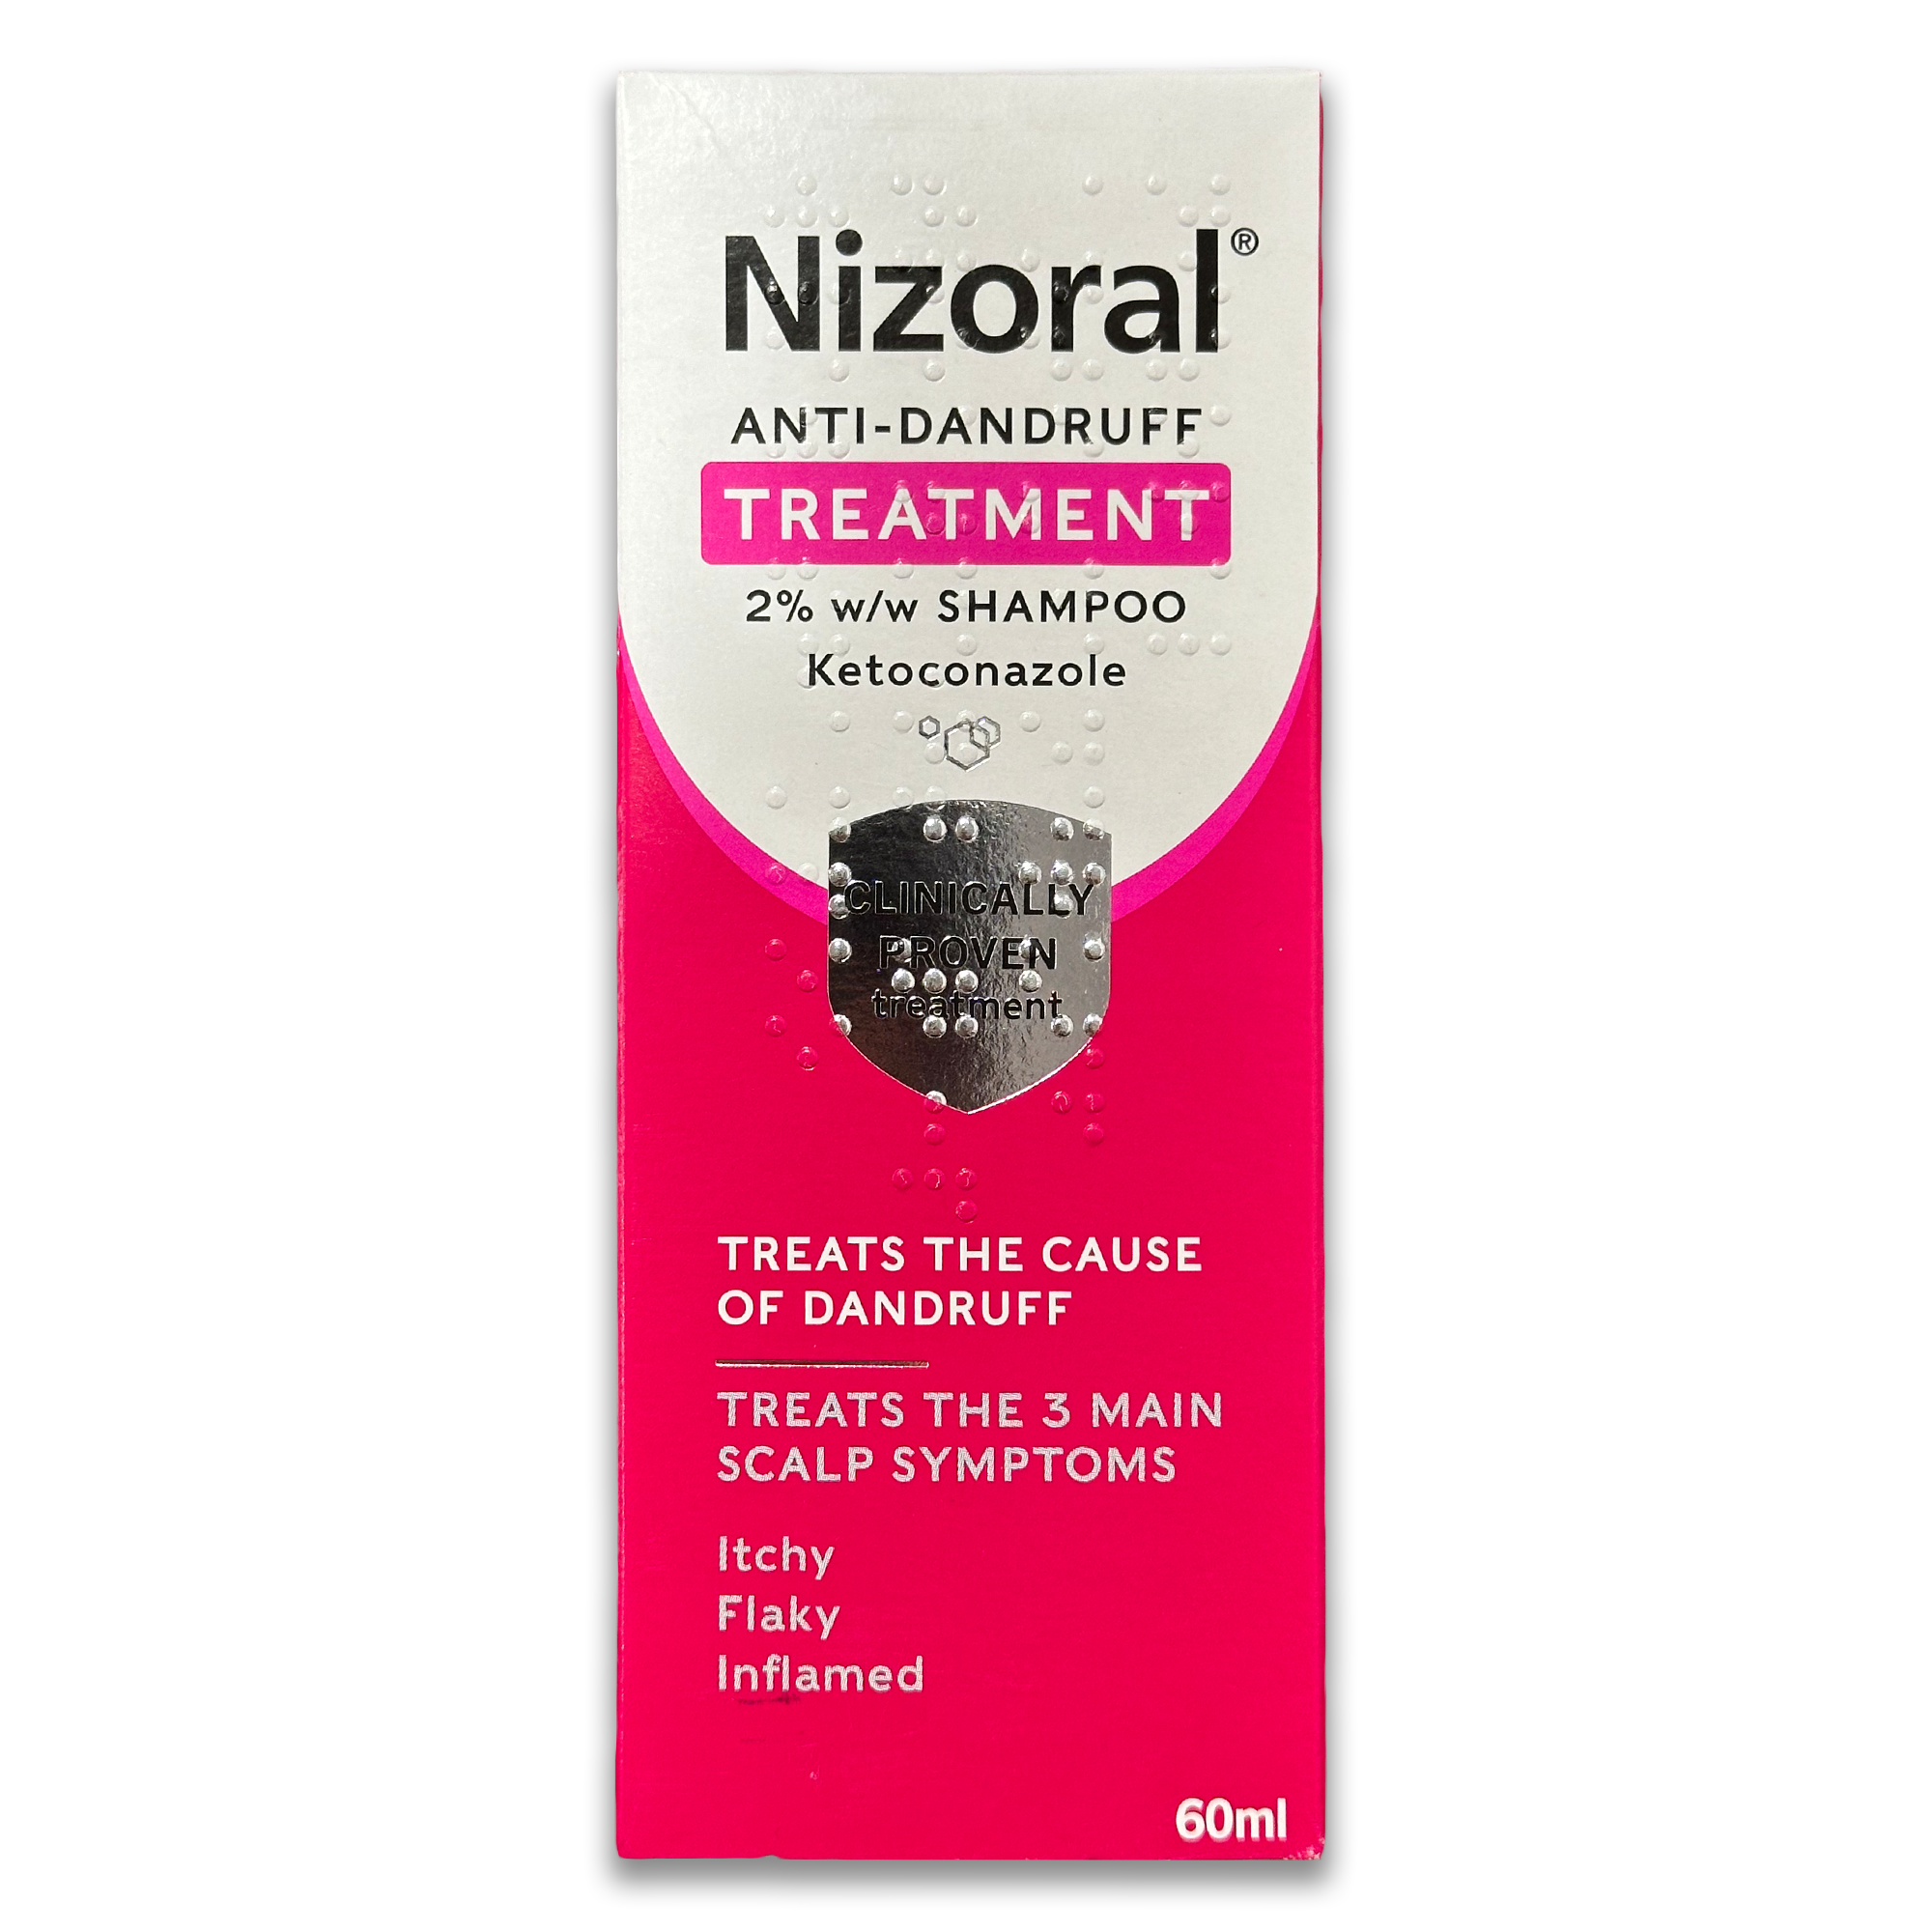 Nizoral Shampoo